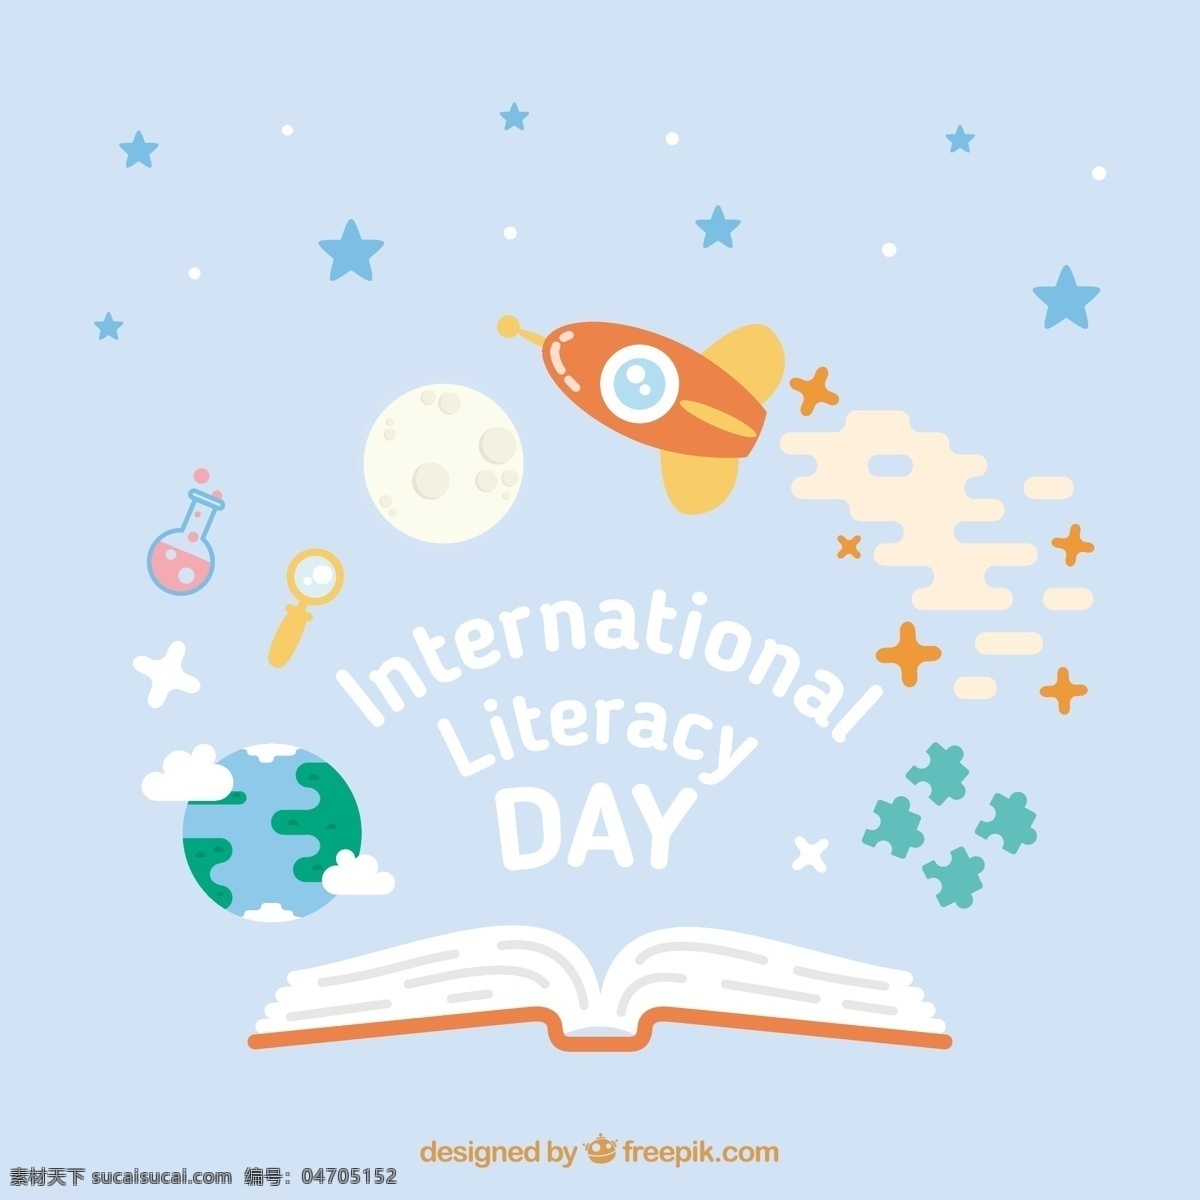 火箭 太空 中庆 祝 扫盲 日 背景 学校 图书 教育 世界 地球 益智 科学 月亮 空间 庆典 人类 节日 活动 学习 学生 社区 未来 阅读